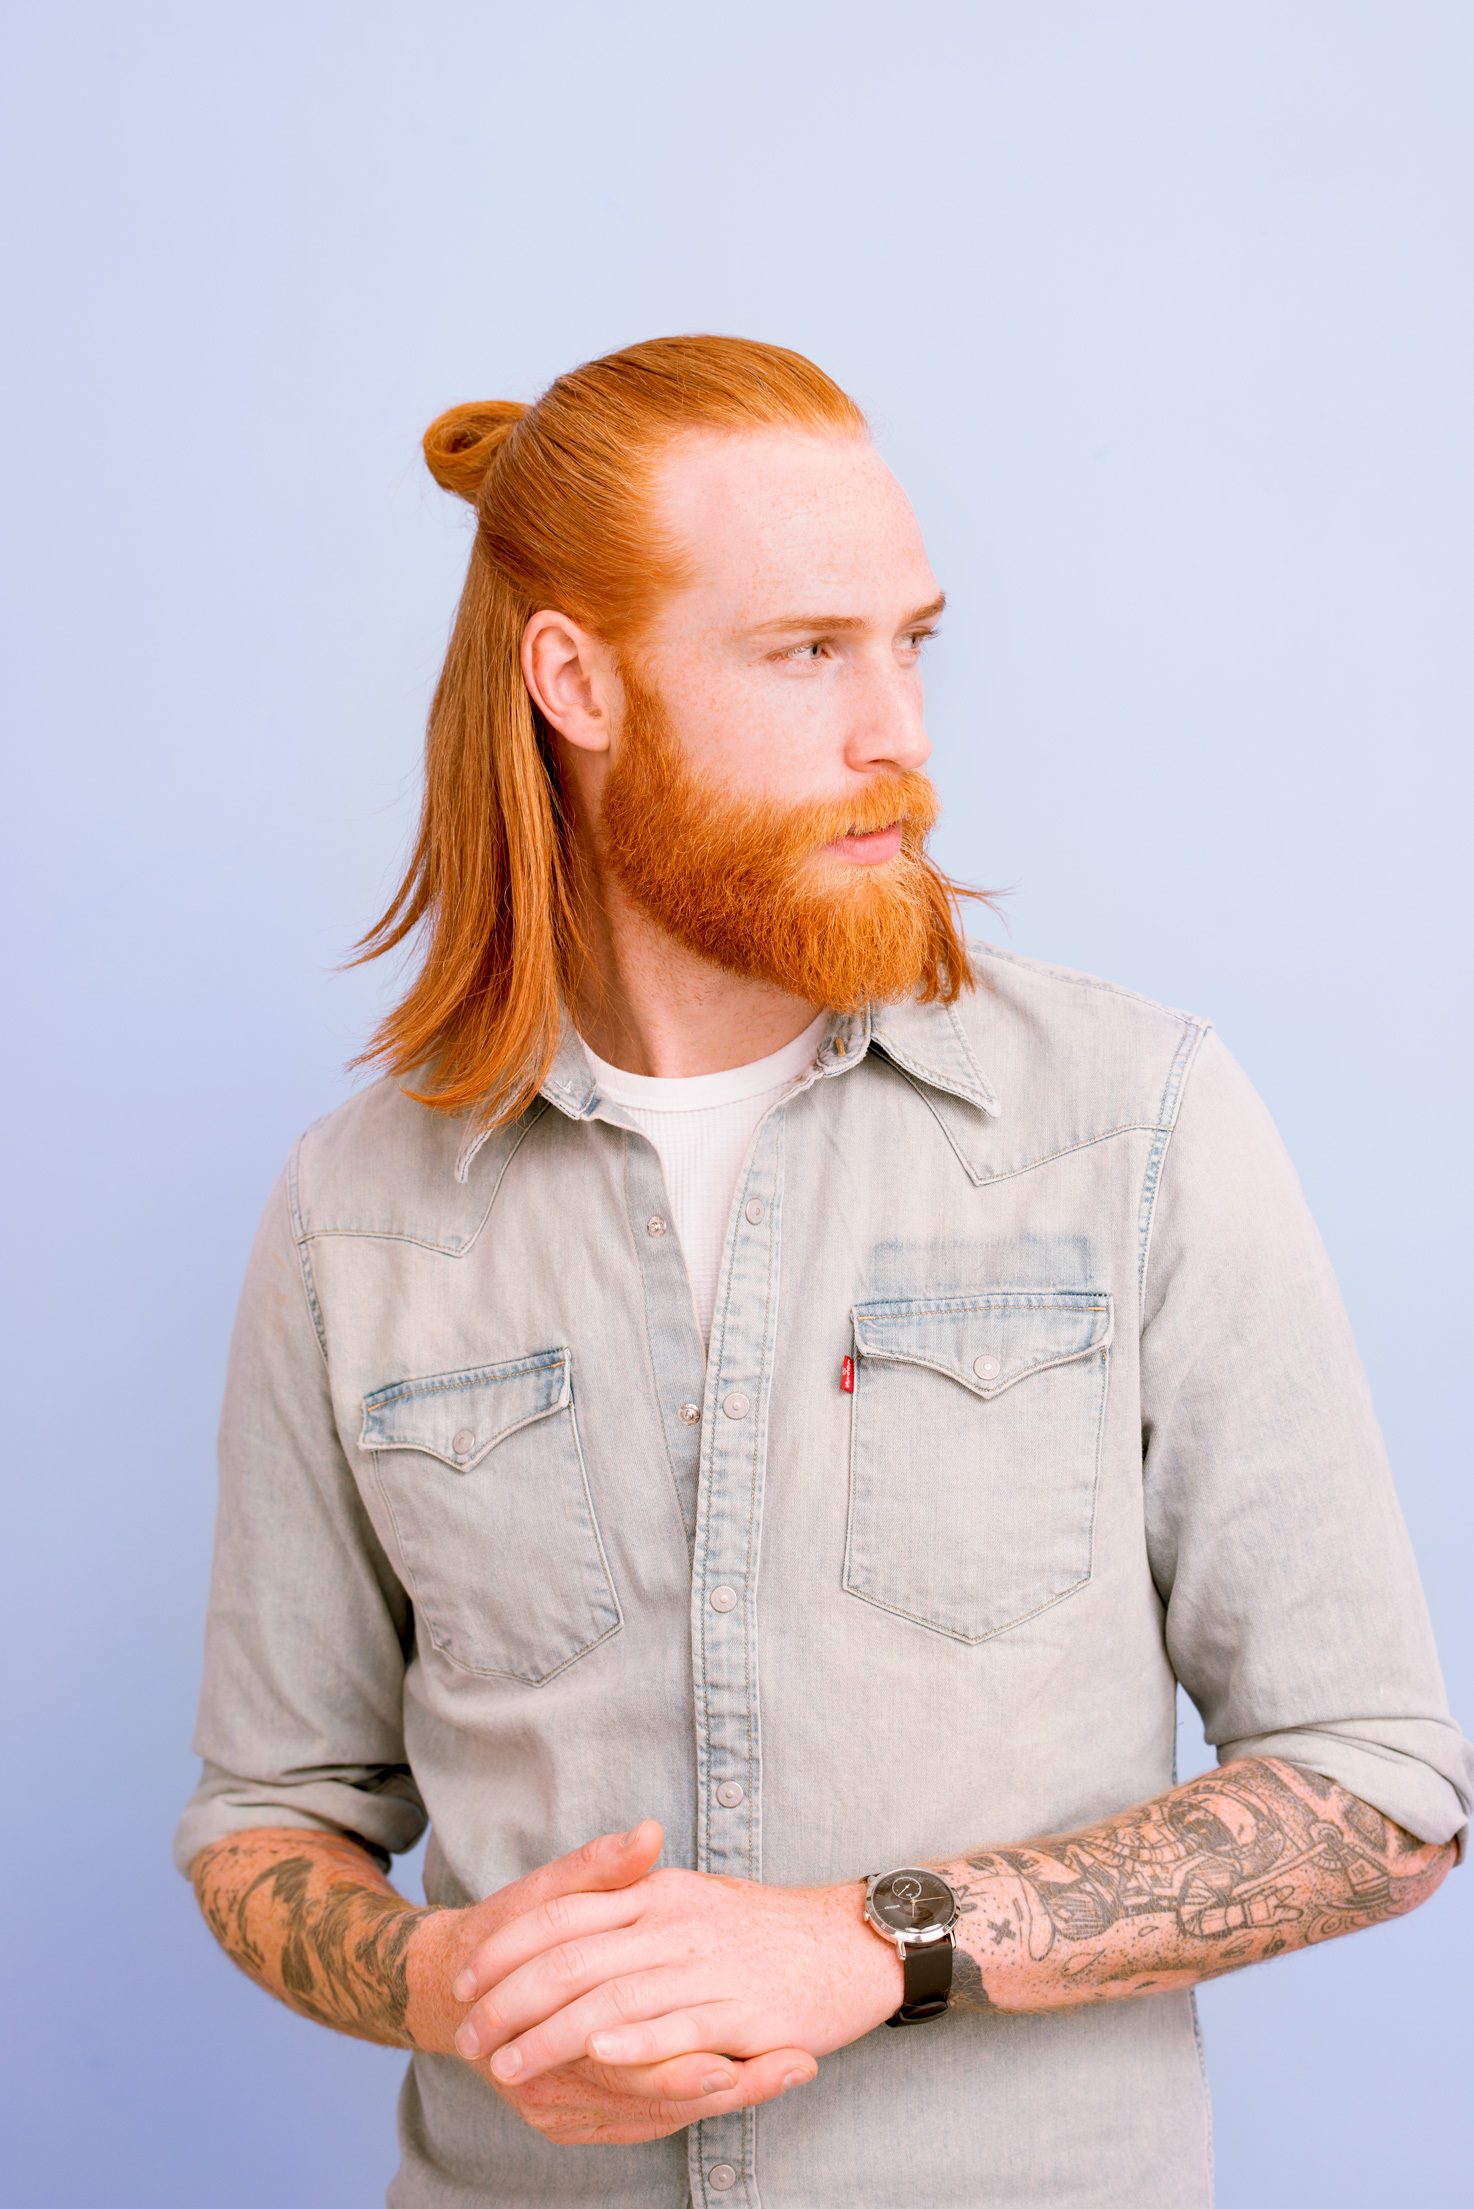 Baglamalı Saç Modelleri Erkek / Erkekler Icin En Iyi Ve En Sik Uzun Sac Modelleri Uplifers : Üstten bağlamalı saç modeli kesimi kıvanç tatlıtuğ saç kesimi nasıl yapılır?burak öz çiftçi saç kesimi nasıl yapılır?murat boz saç.